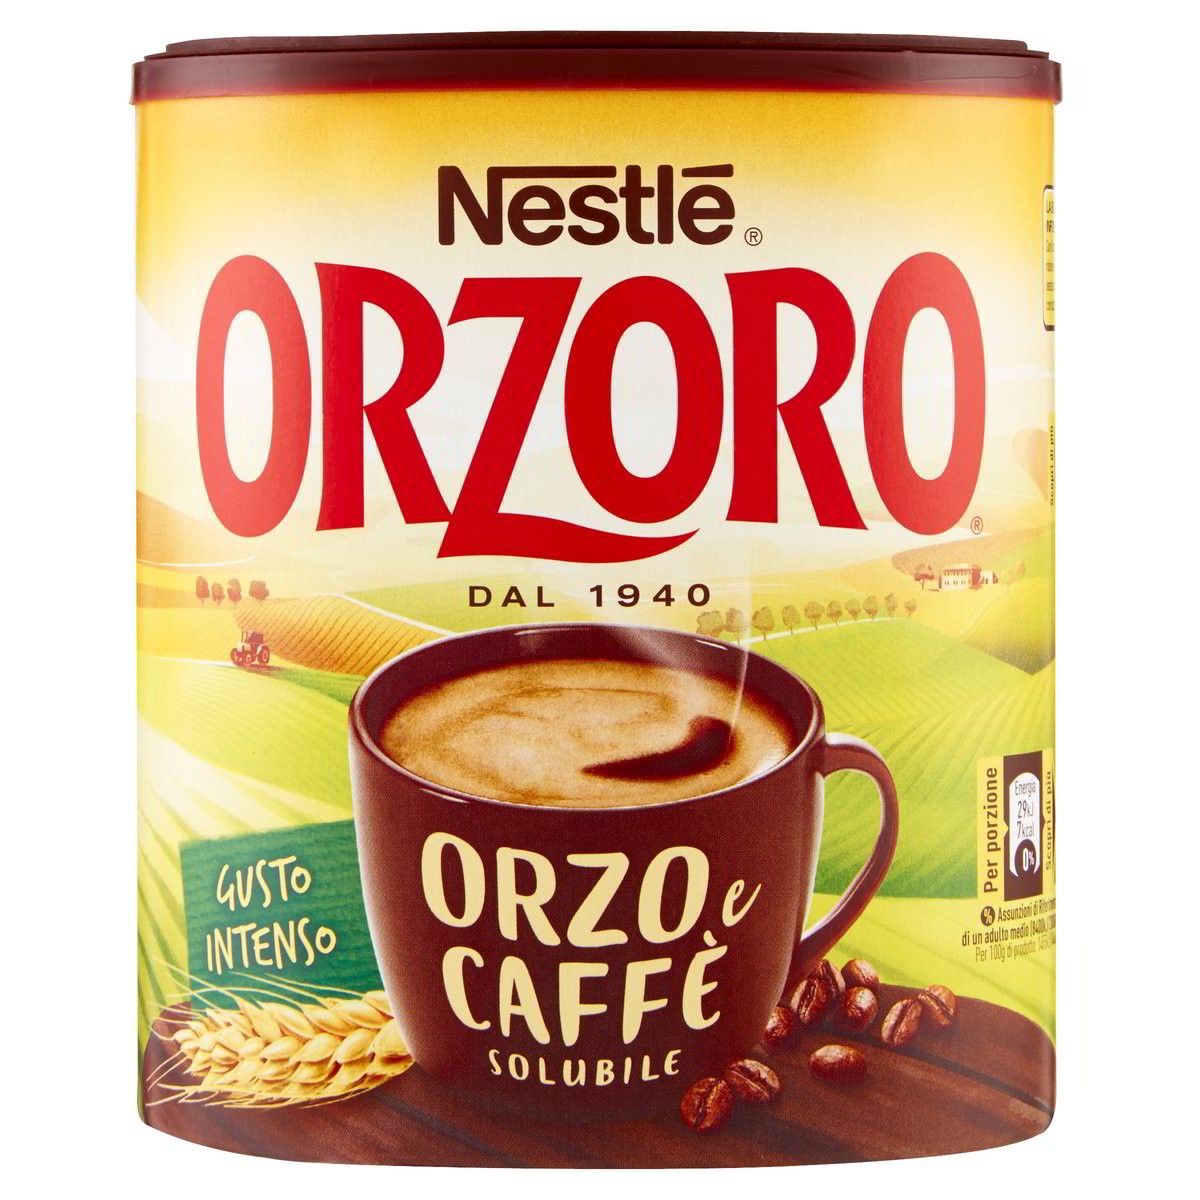 Nestlè Orzo e caffè solubile Orzoro